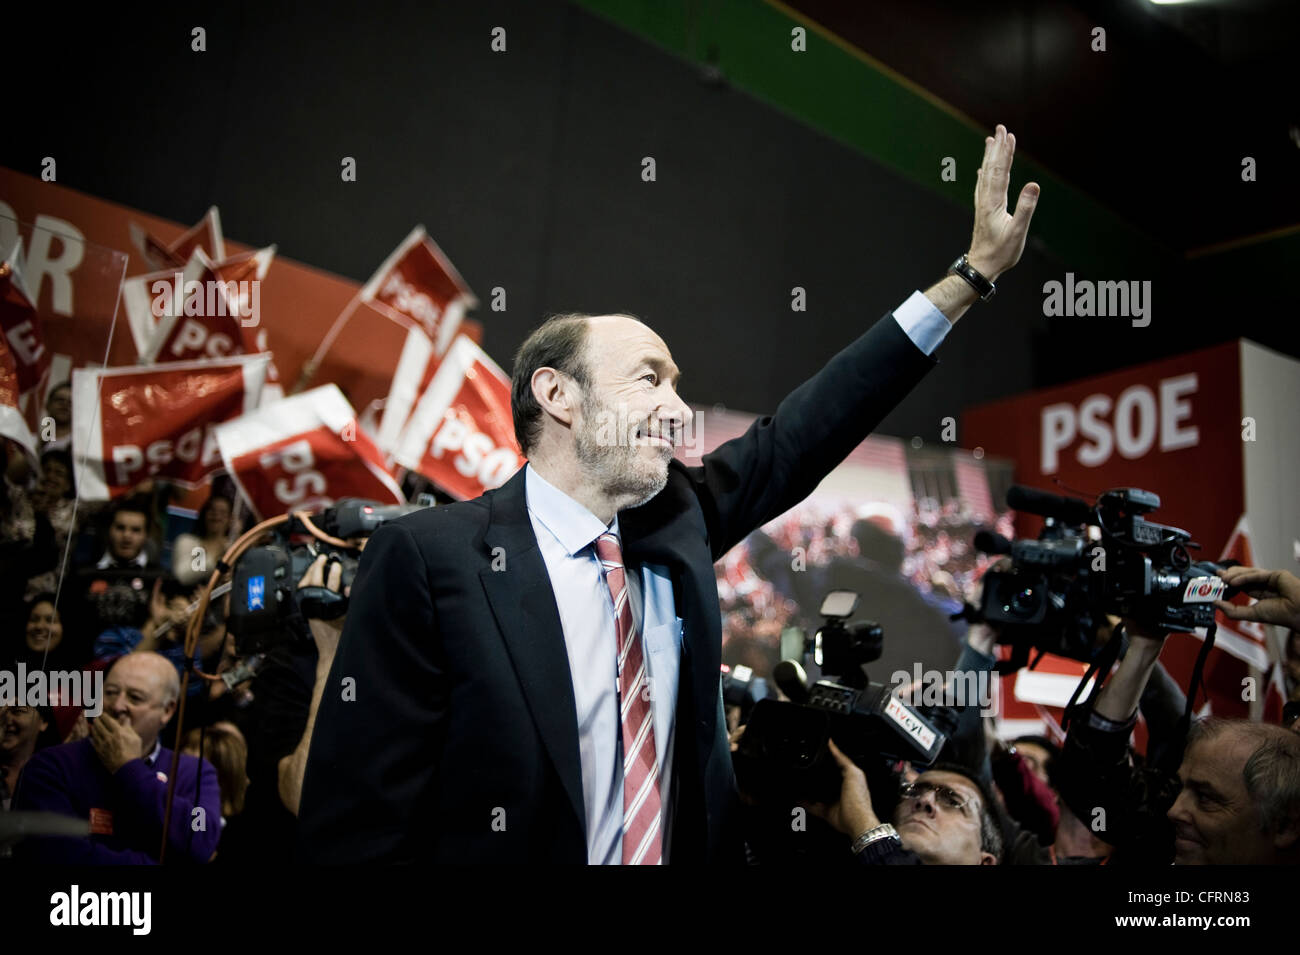 Alfredo Perez Rubalcaba, homme politique espagnol, leader du parti socialiste ouvrier espagnol PSOE Banque D'Images